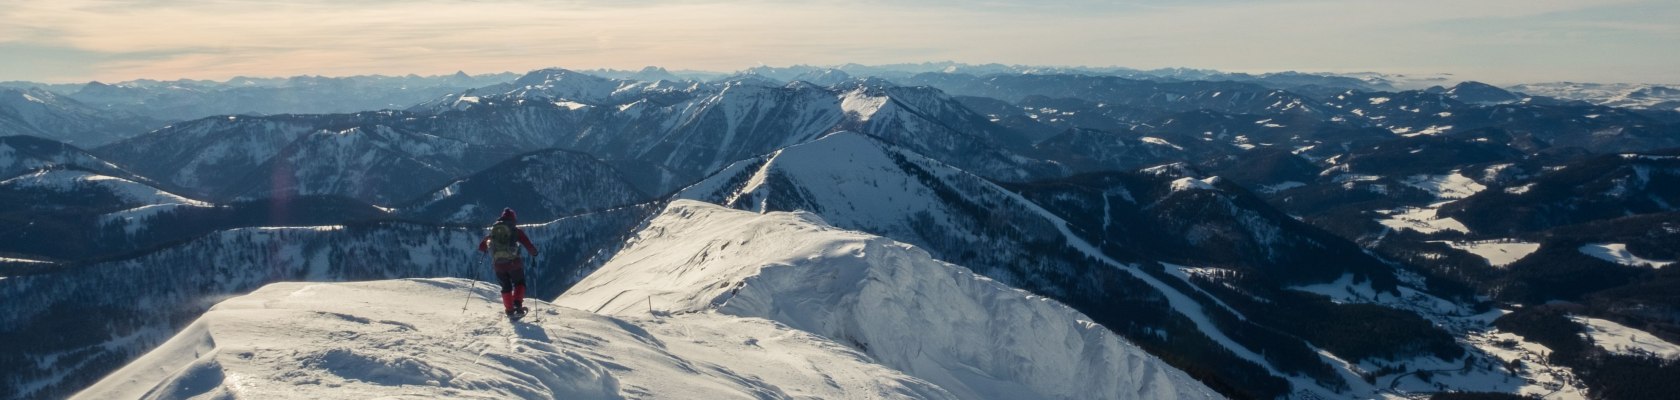 Schneeschuhwandern am Großen Ötscher, © Jürgen Thoma